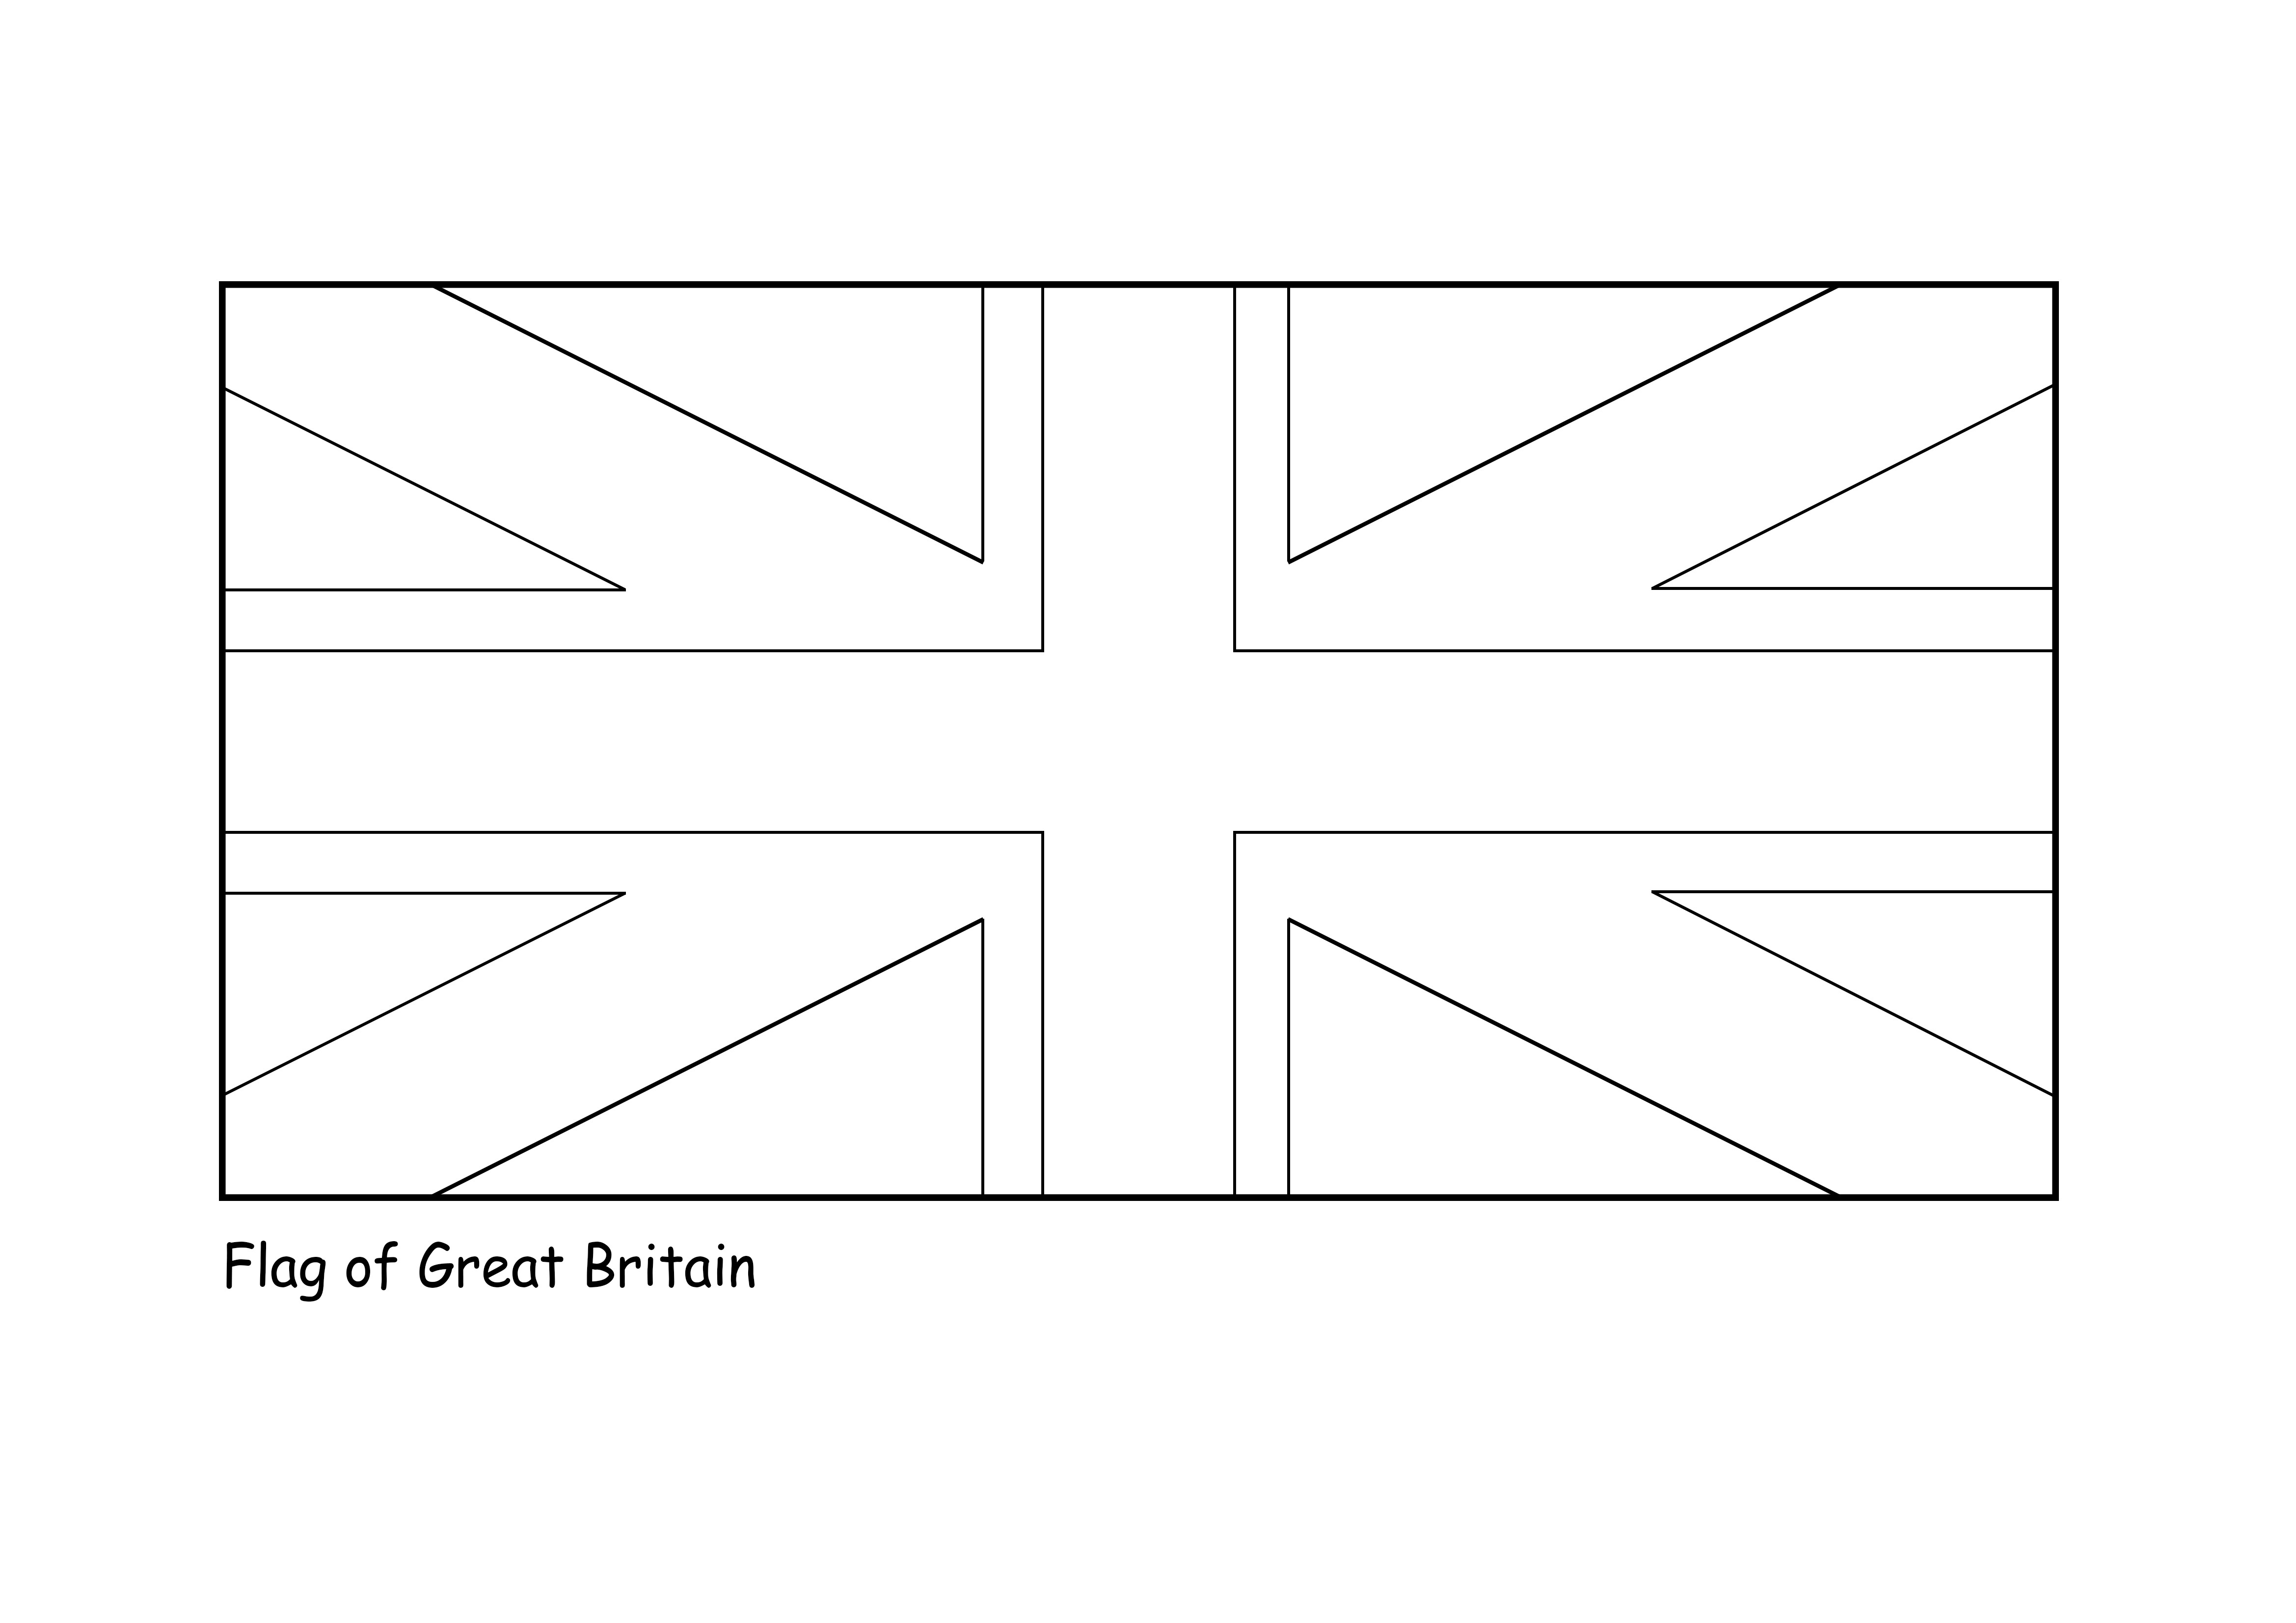 FREE! - Die Britische Flagge (Union Jack) Bild zum Ausschneiden